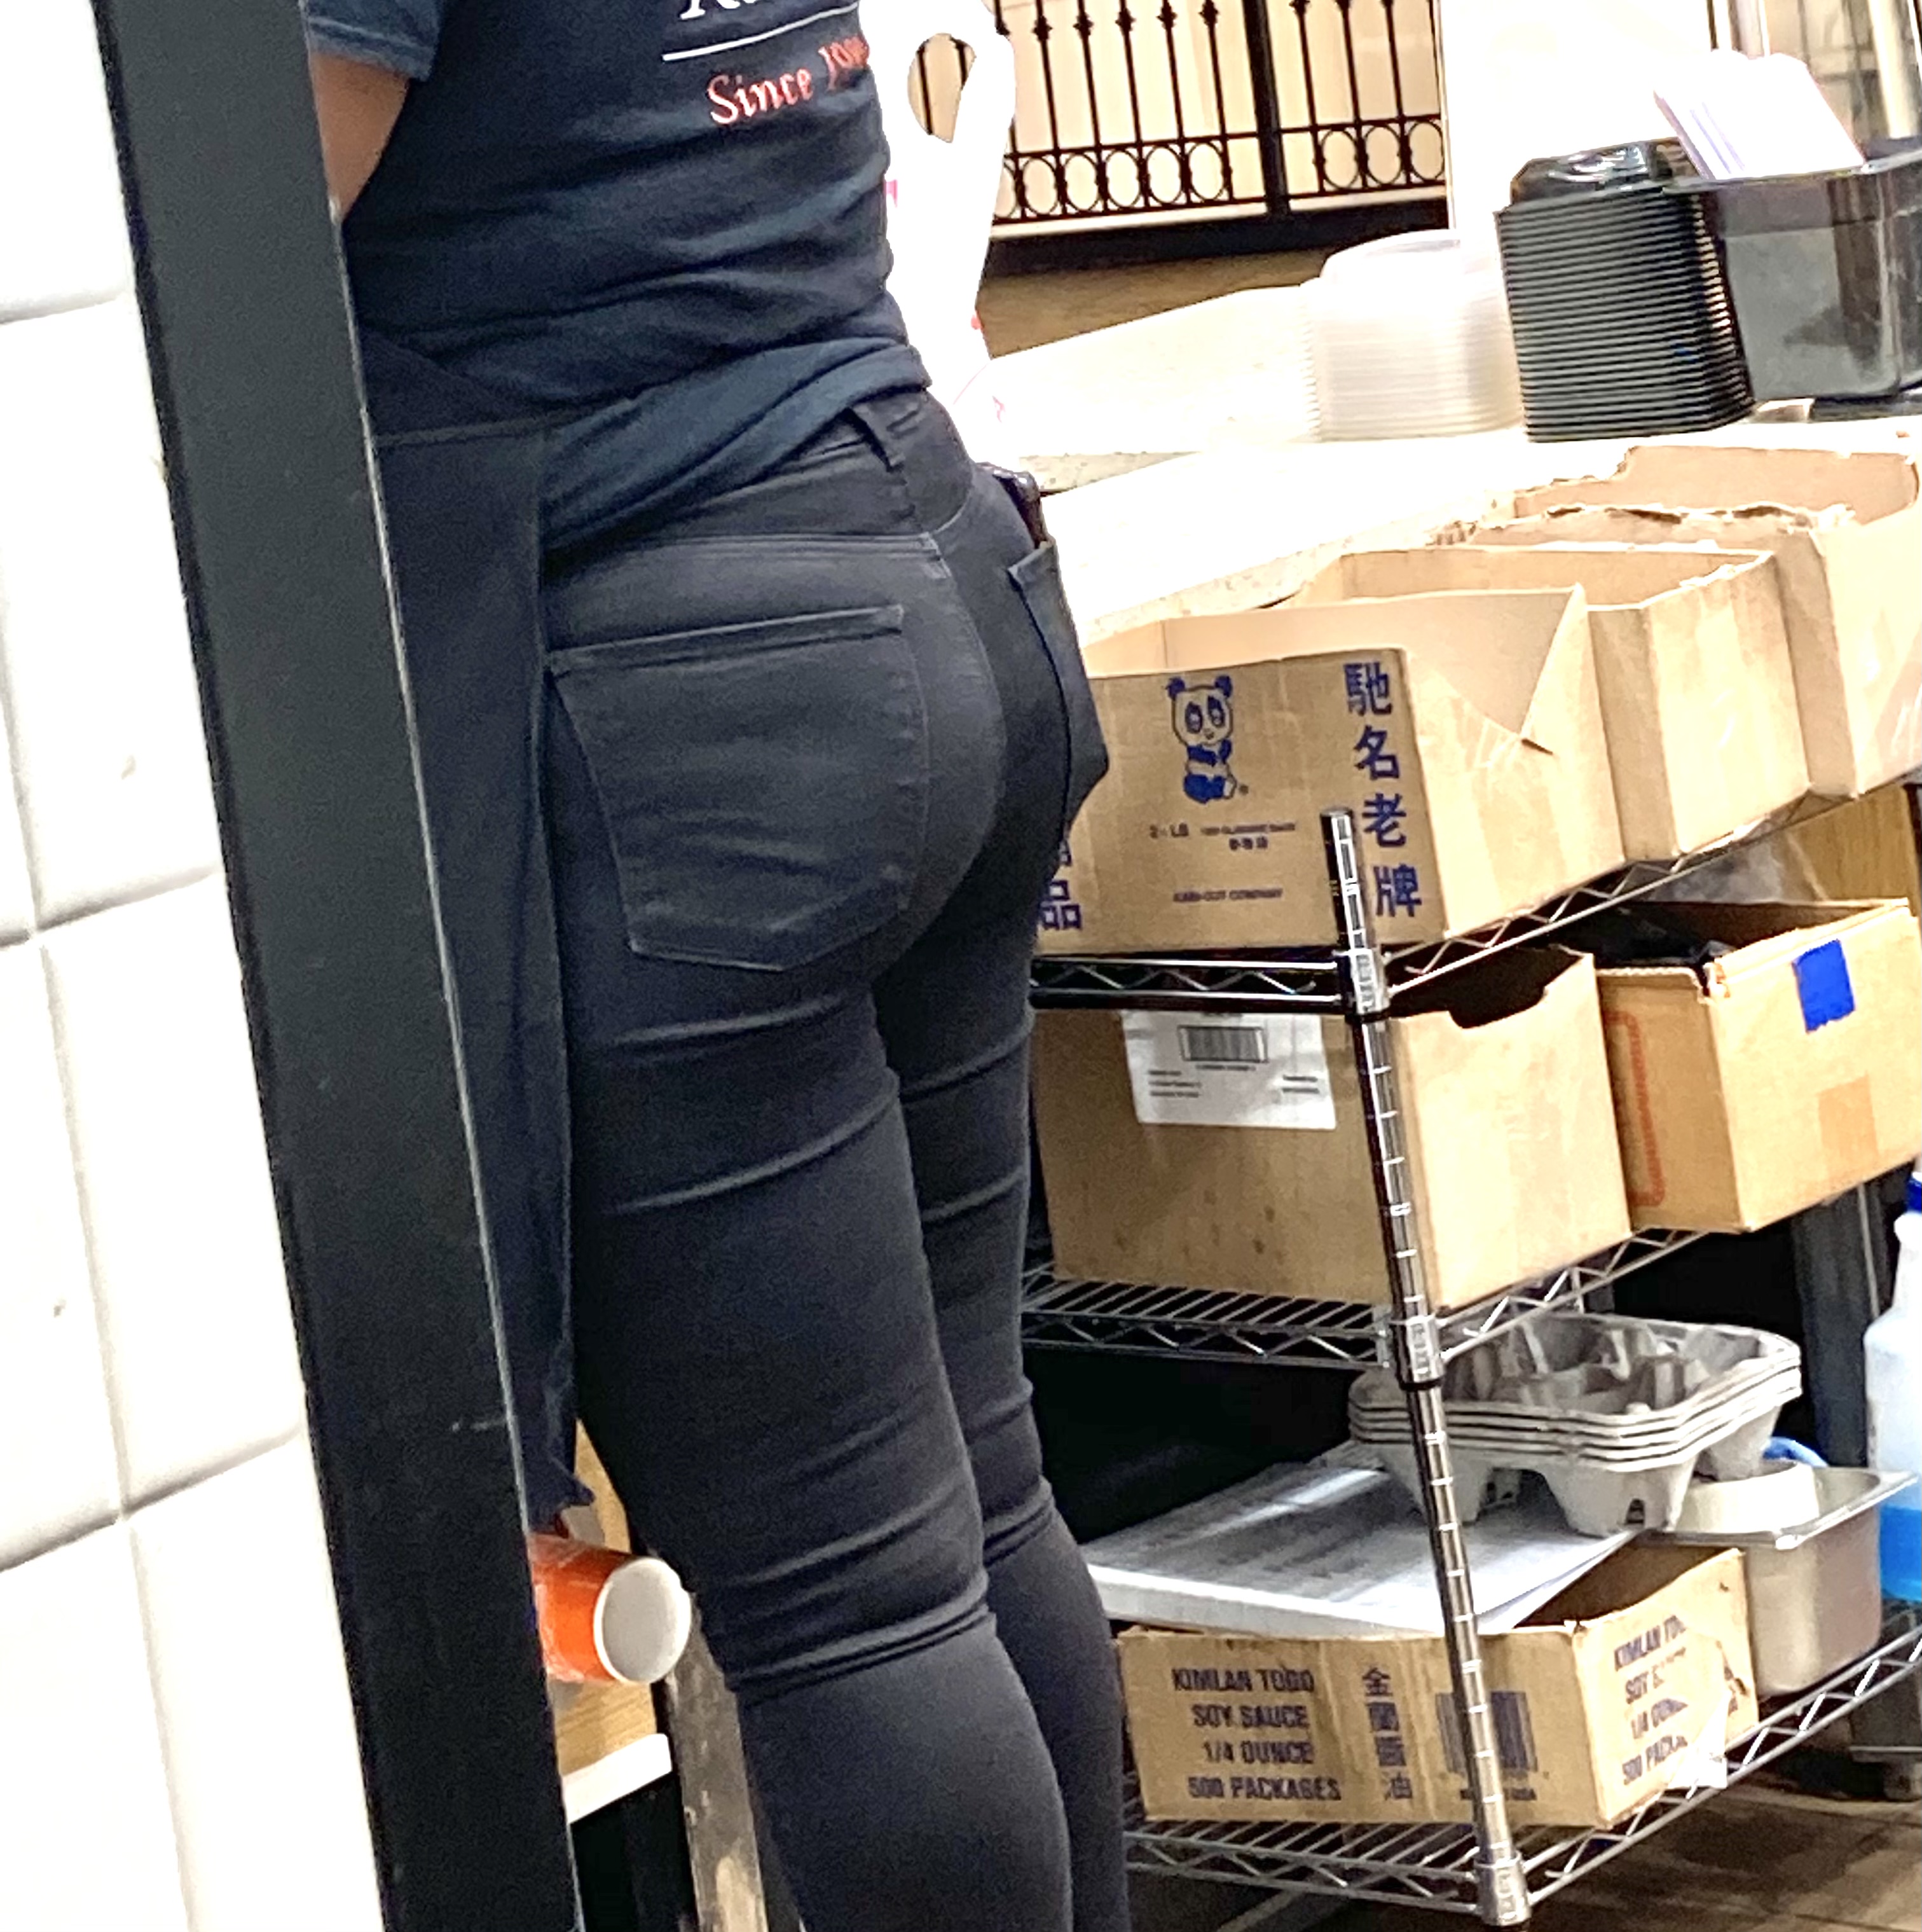 Ass of Co-worker's fiance